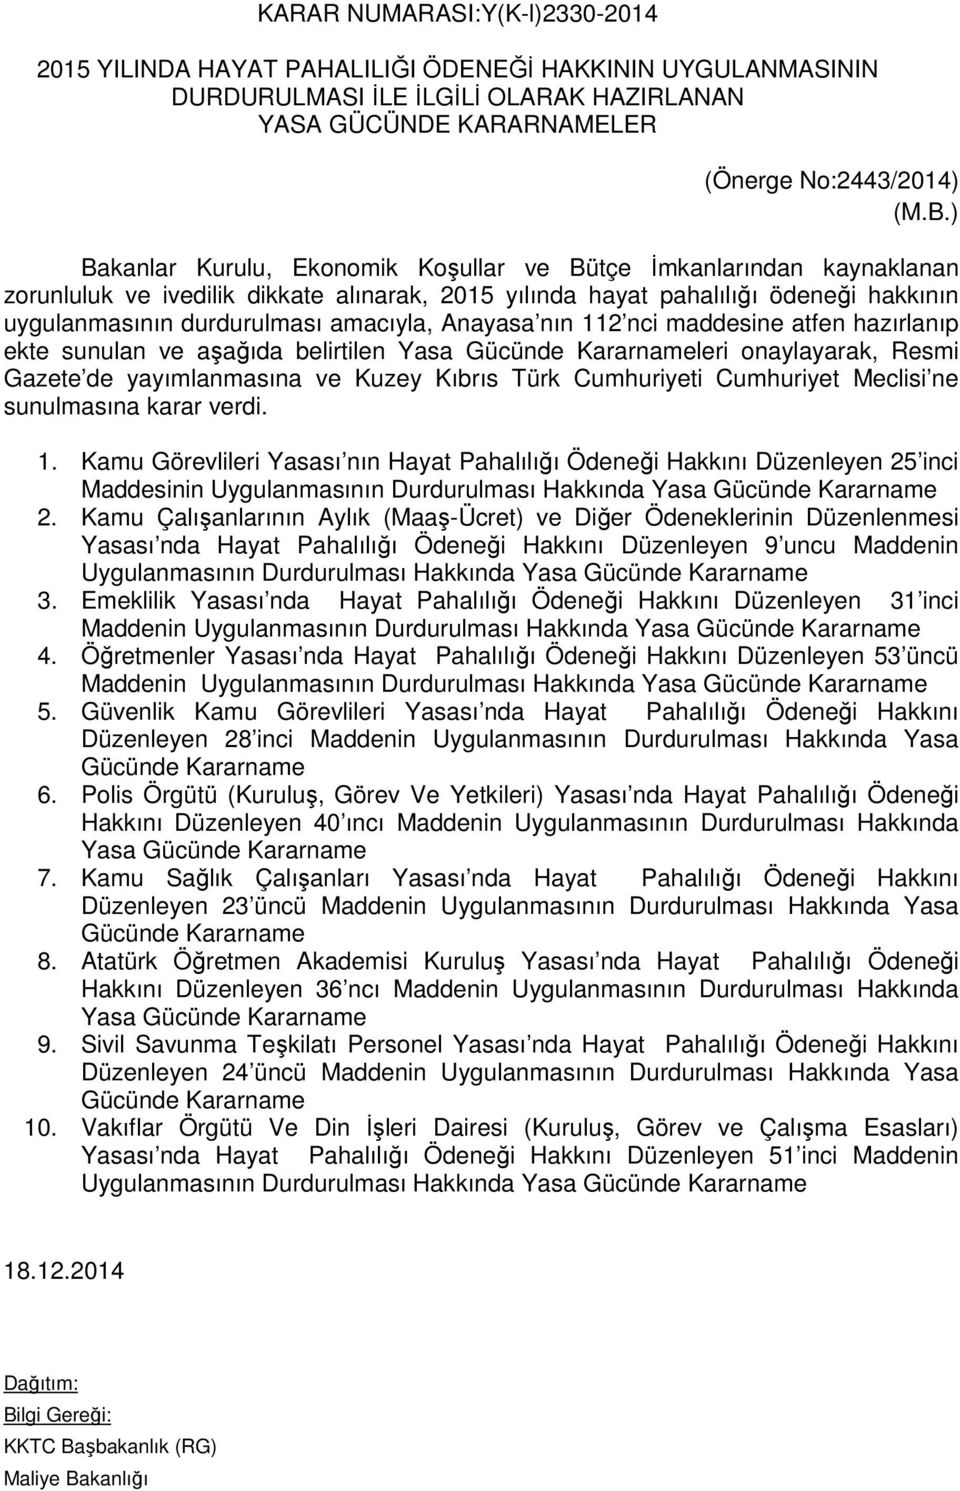 Anayasa nın 112 nci maddesine atfen hazırlanıp ekte sunulan ve aşağıda belirtilen Yasa Gücünde Kararnameleri onaylayarak, Resmi Gazete de yayımlanmasına ve Kuzey Kıbrıs Türk Cumhuriyeti Cumhuriyet